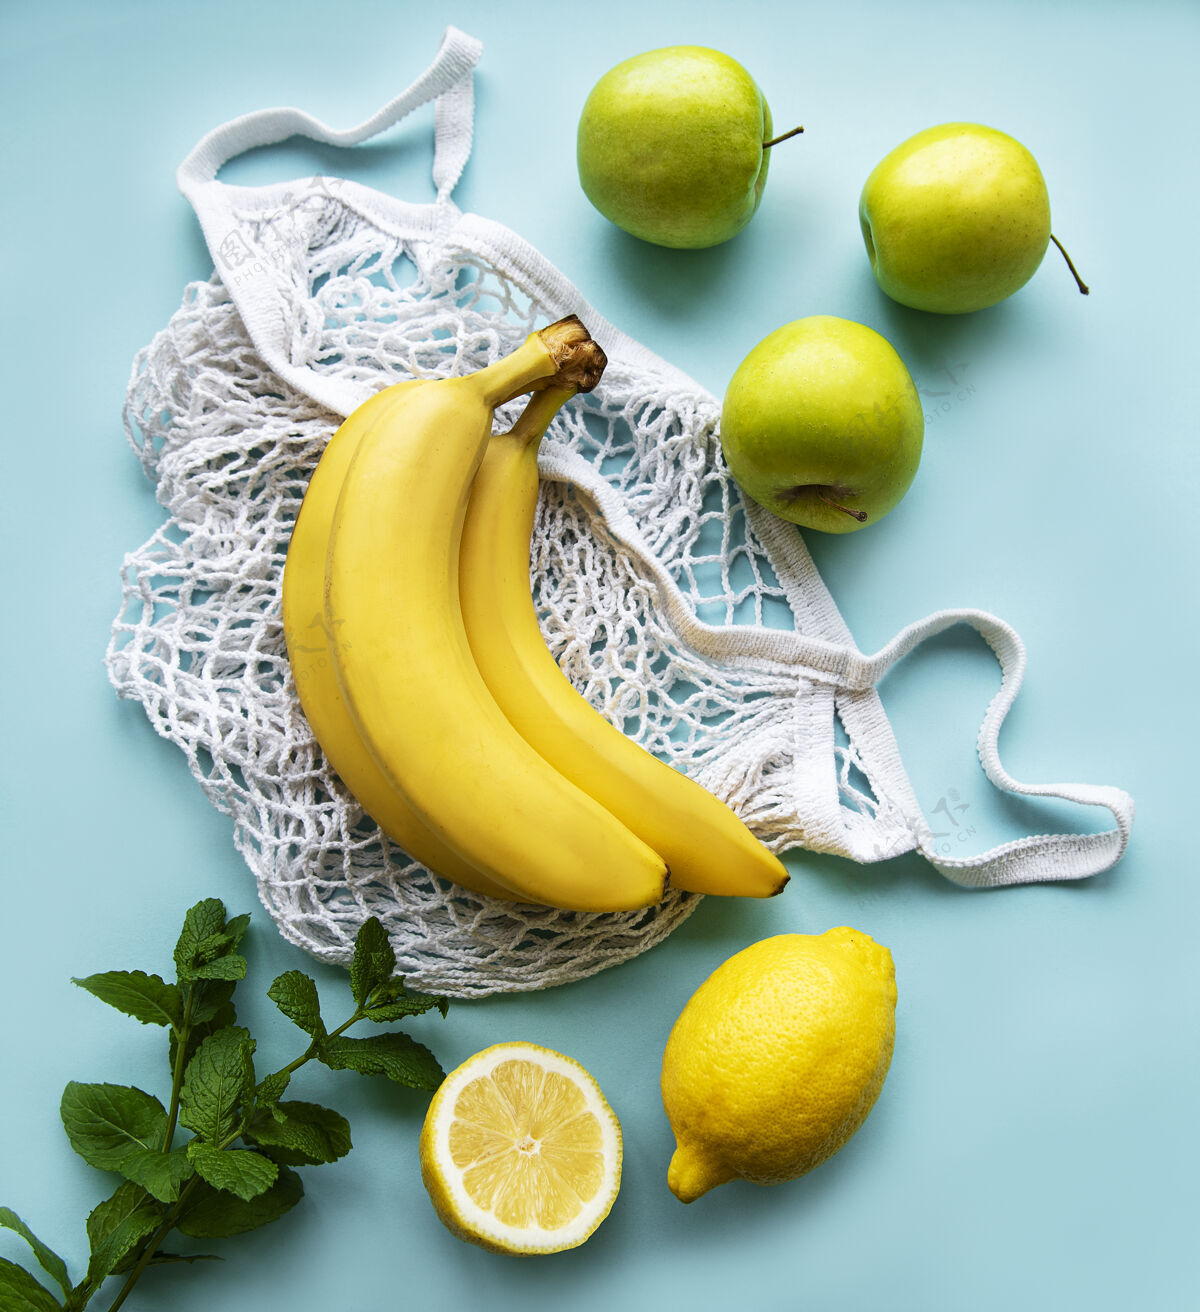 热带多汁成熟的柑橘类水果和香蕉在一个环保购物袋蔬菜饮食健康